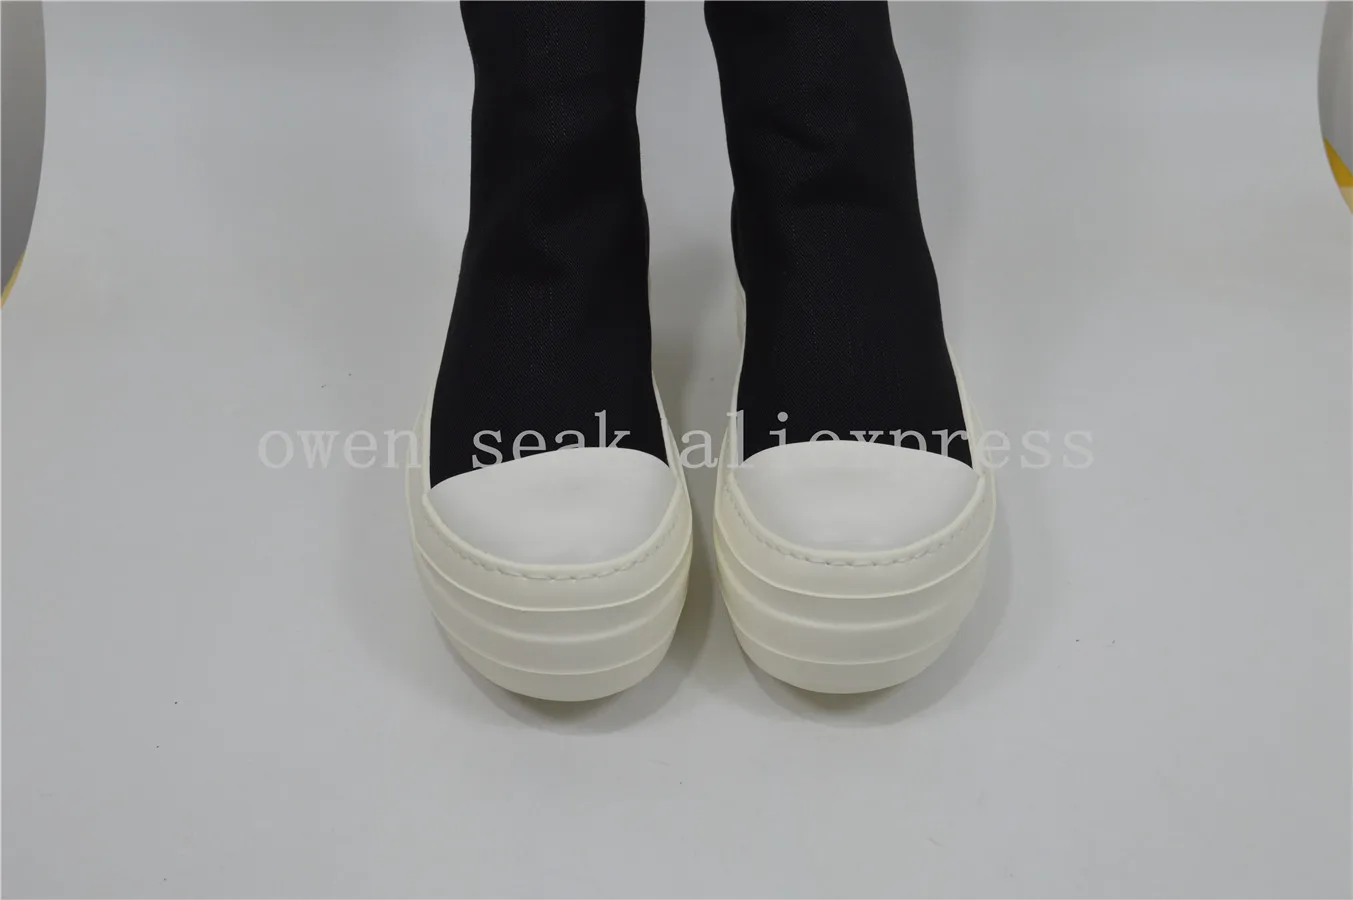 Obrázok /content/Owen-seak-mužov-kolená-vysoké-topánky-luxusné-6-260588.jpeg